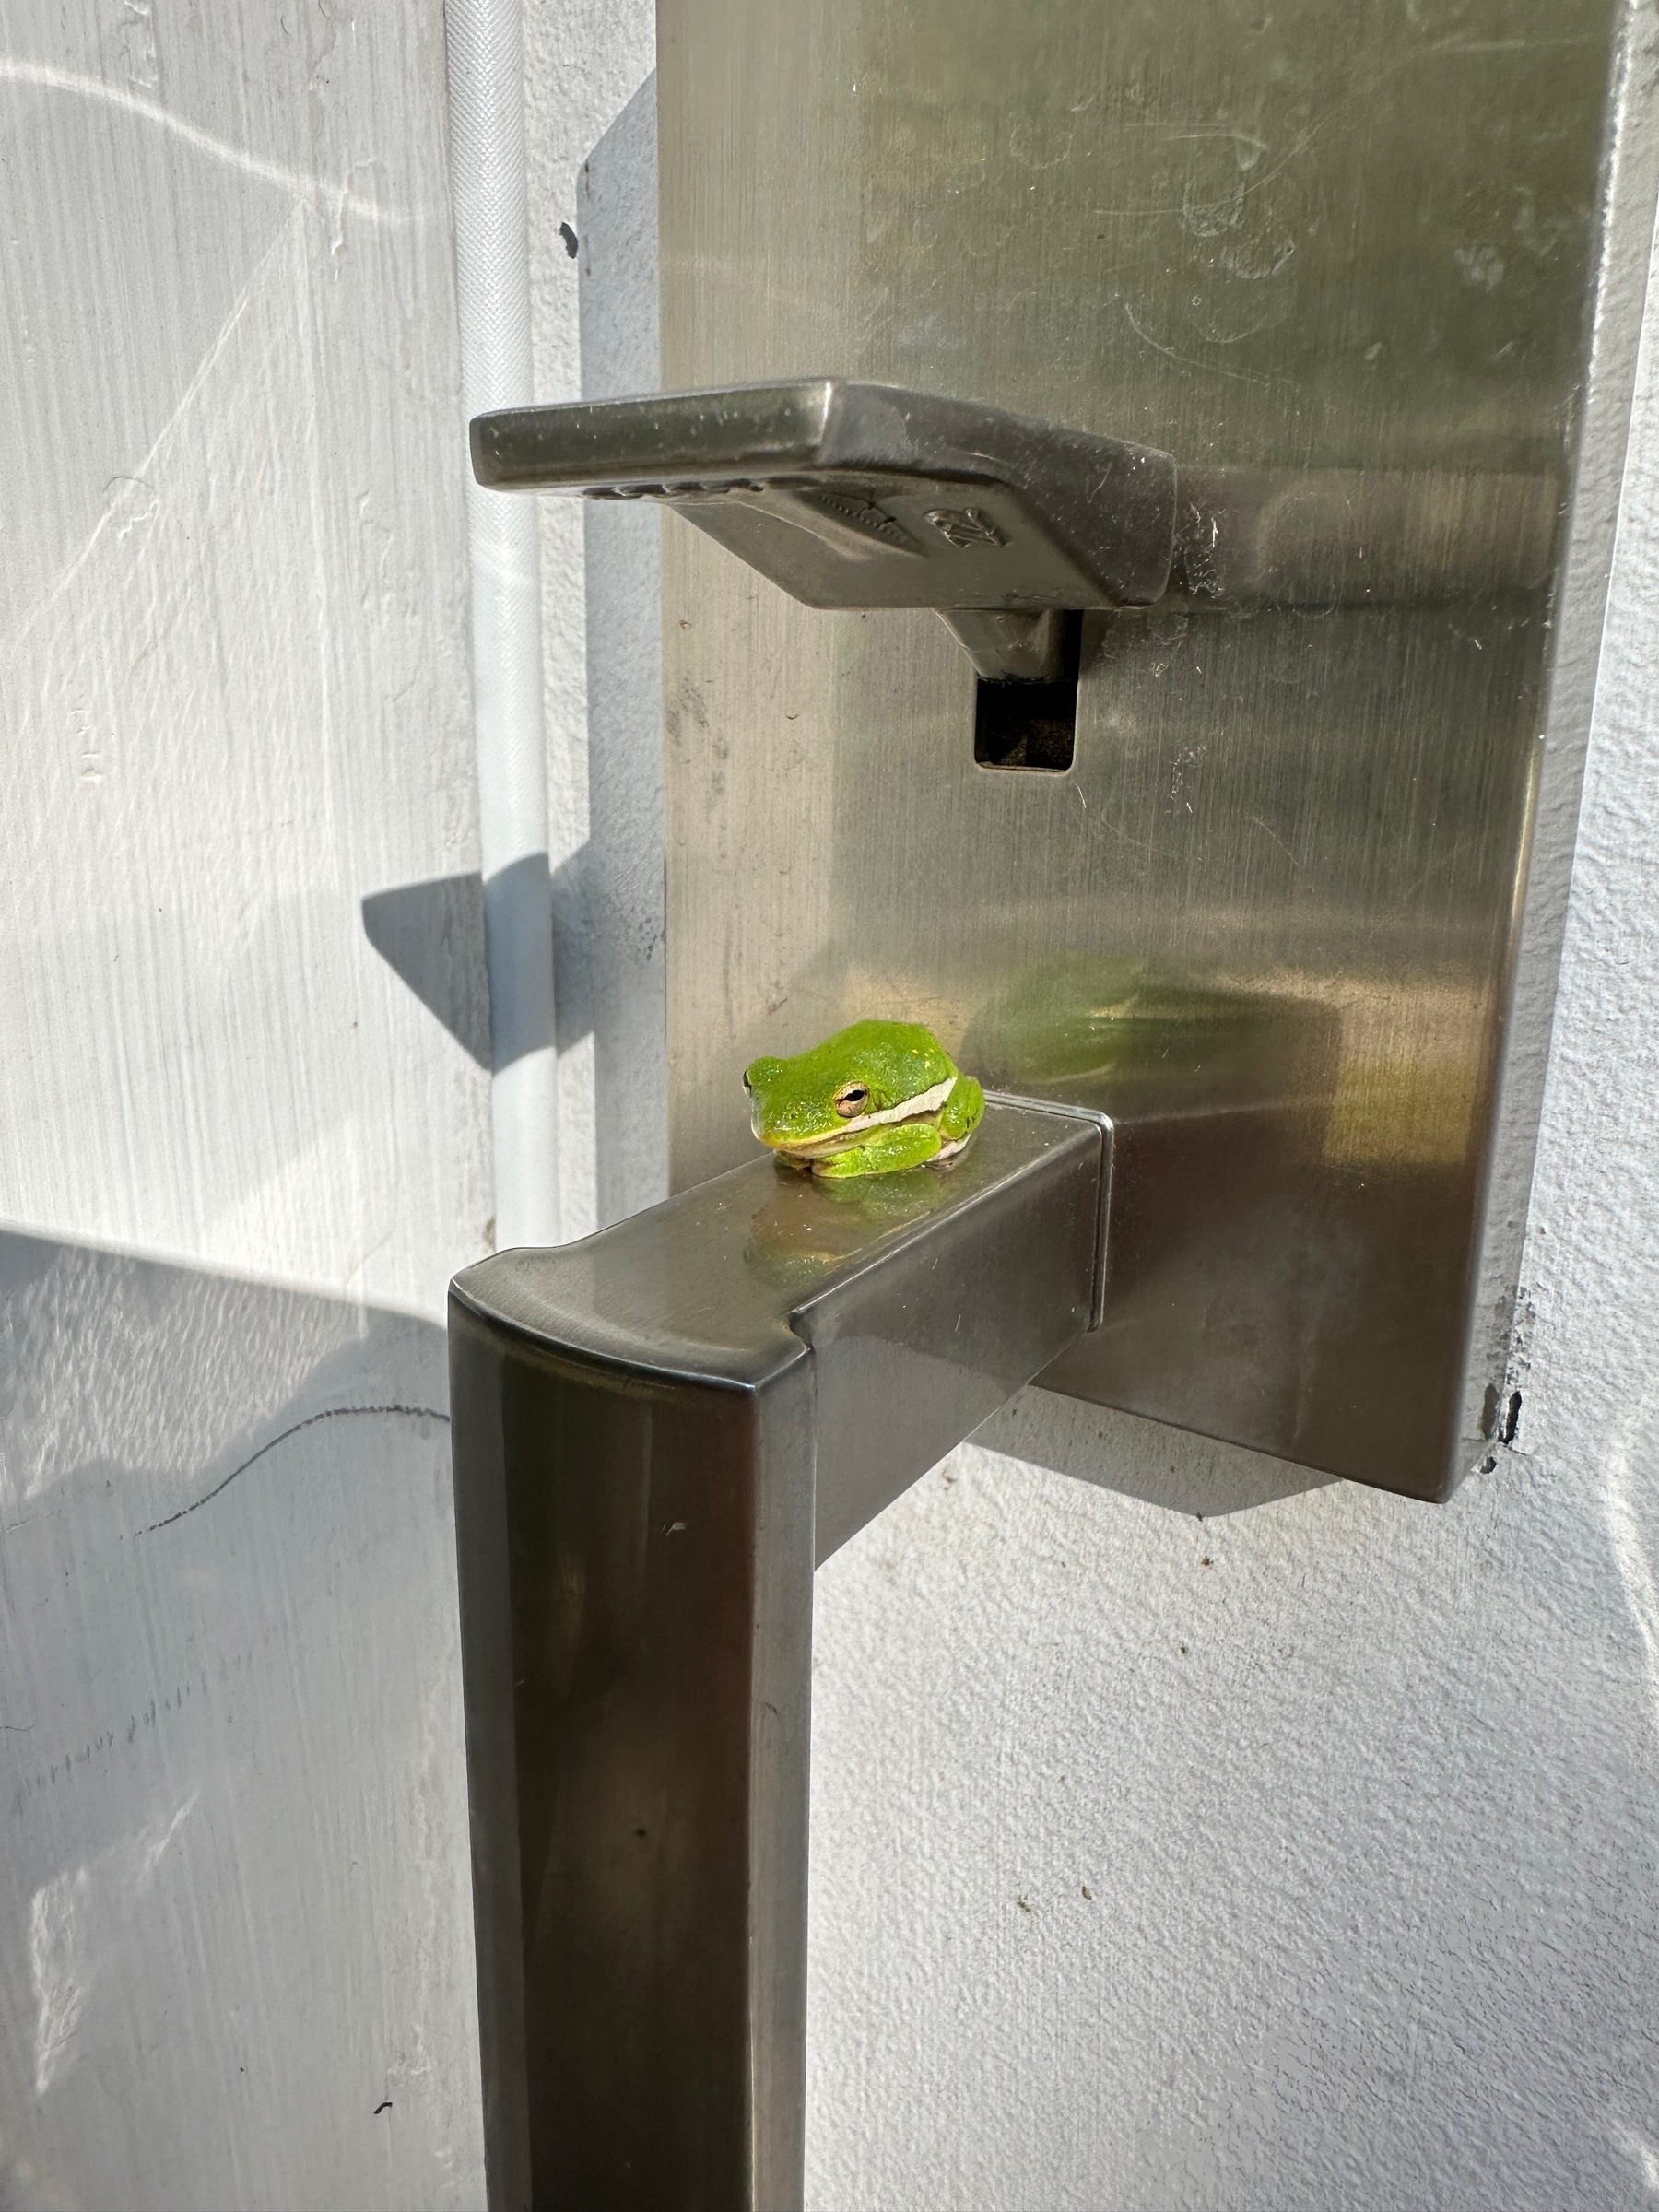 Small green frog on door handle. 